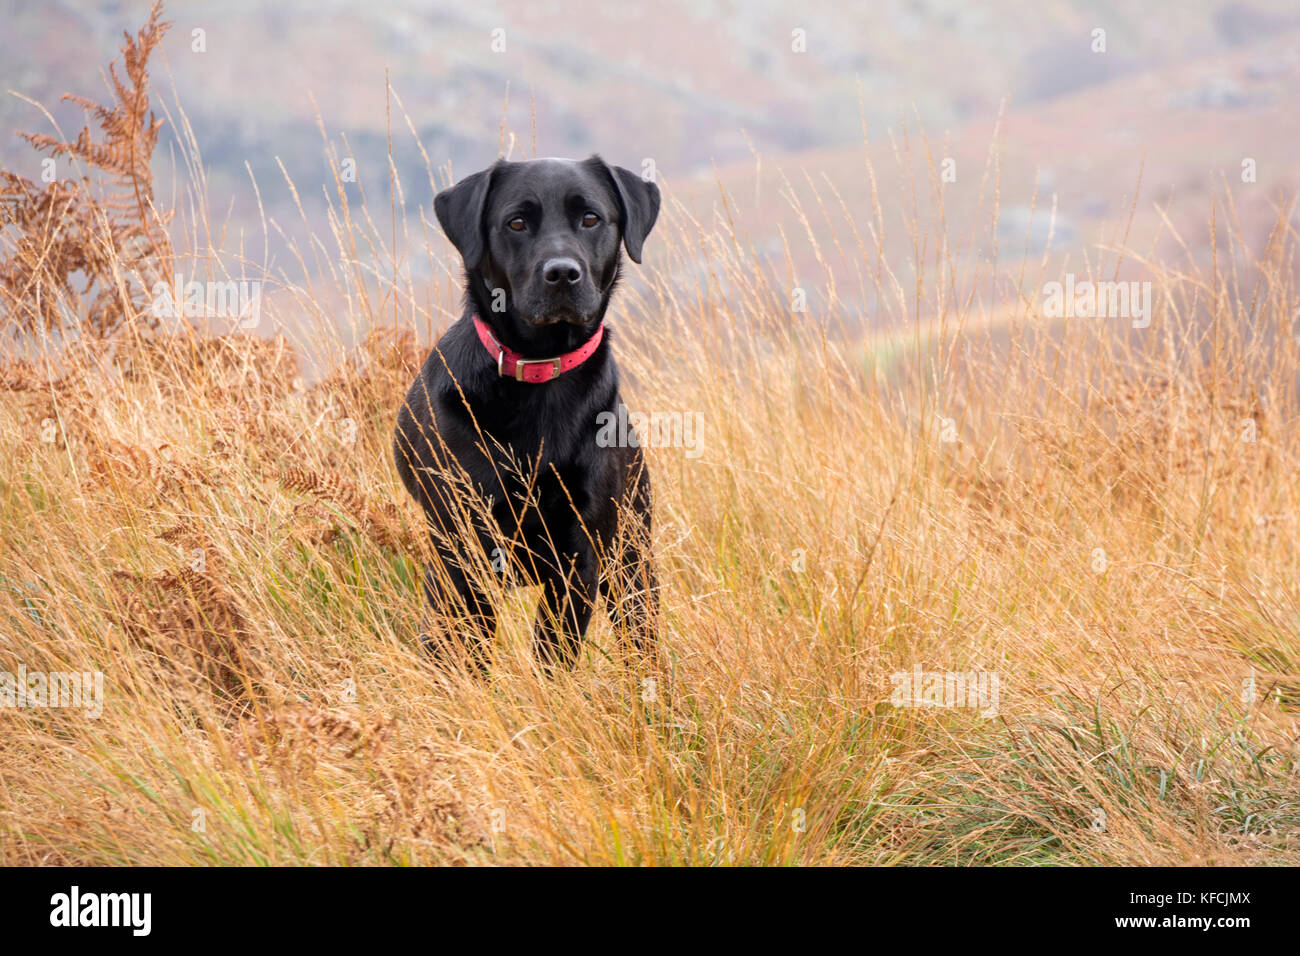 A black Labrador Retriever in a autumn landscape, England, UK Stock Photo